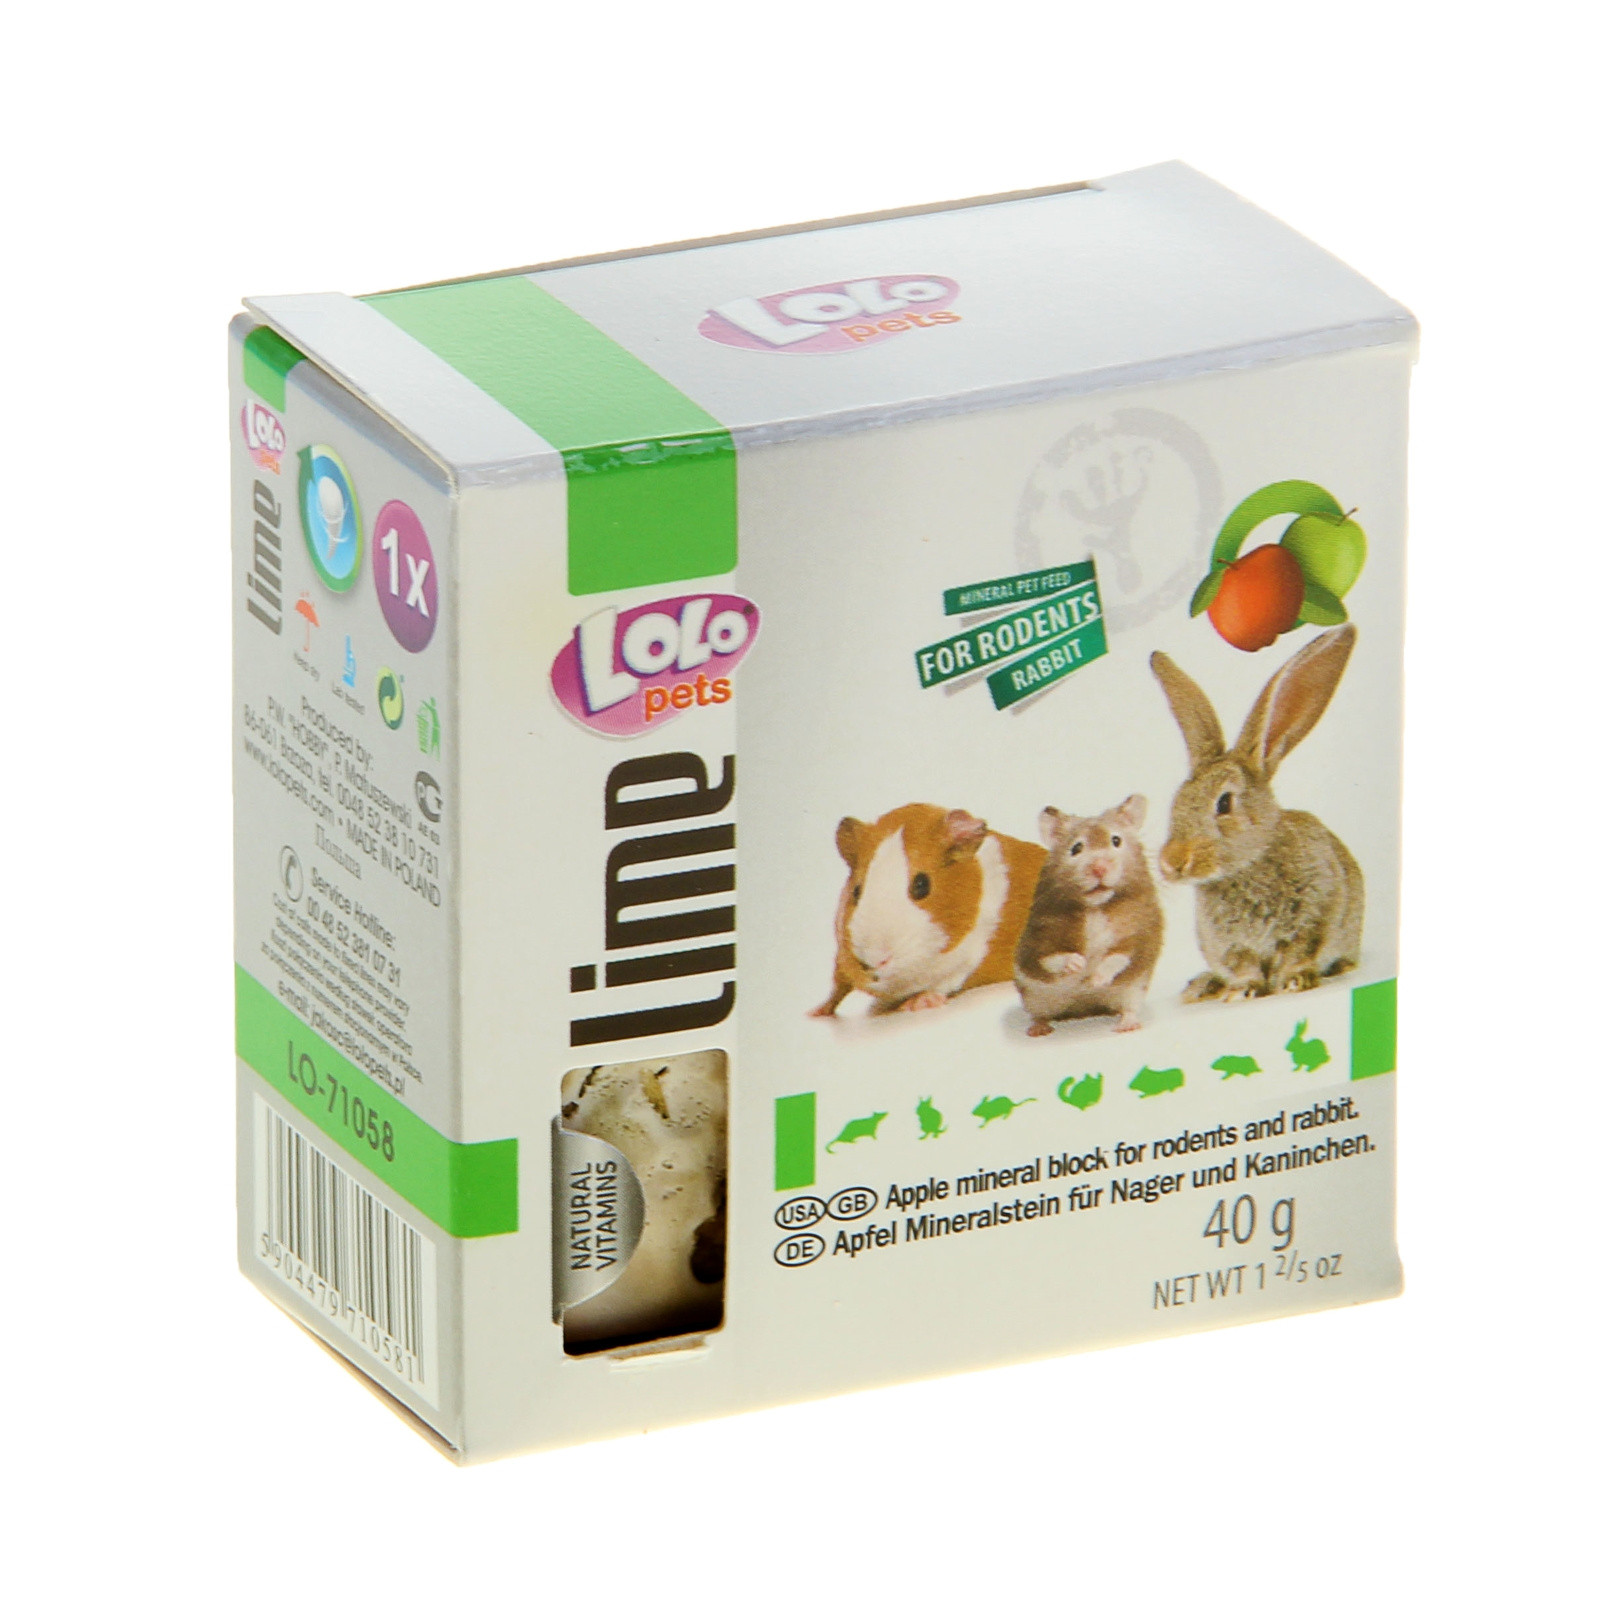 LoLo Pets минеральный камень для грызунов и кроликов 40г яблоко купить в Новосибирске в ЗООмагазине Два друга